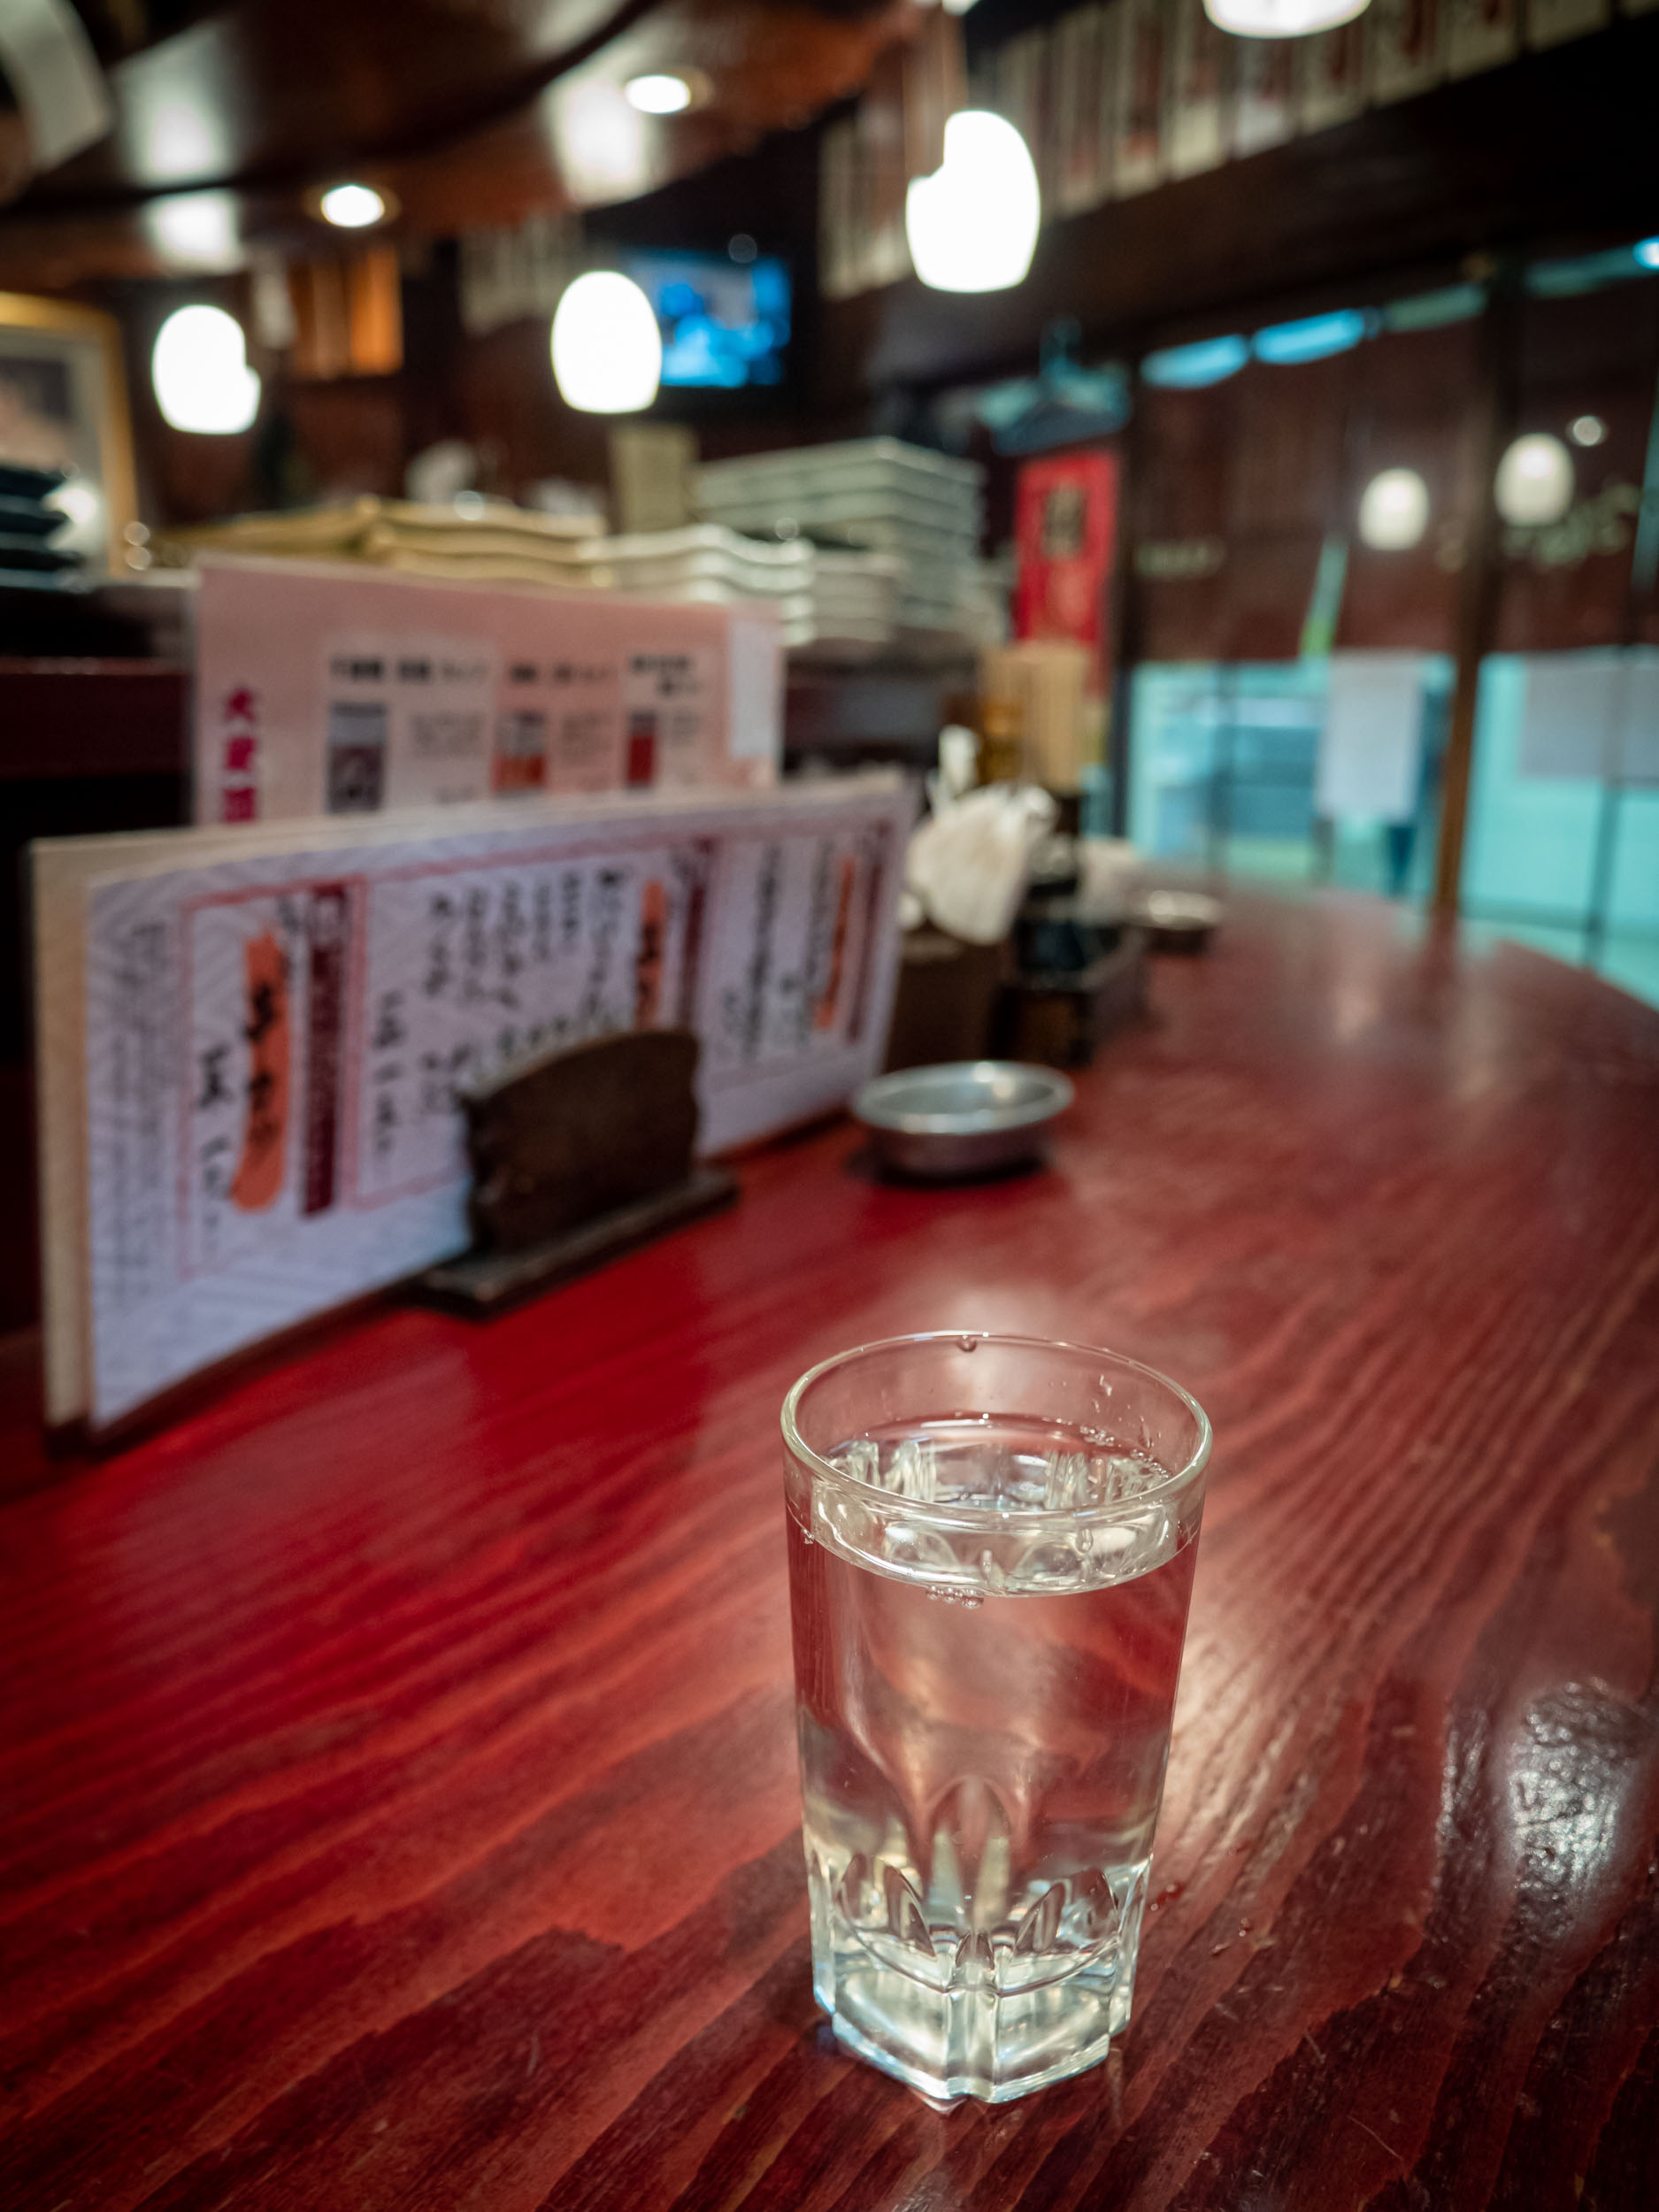  大衆酒場まねき屋 本店のカウンターと日本酒　DMC-GX8 + LEICA DG 12-60mm